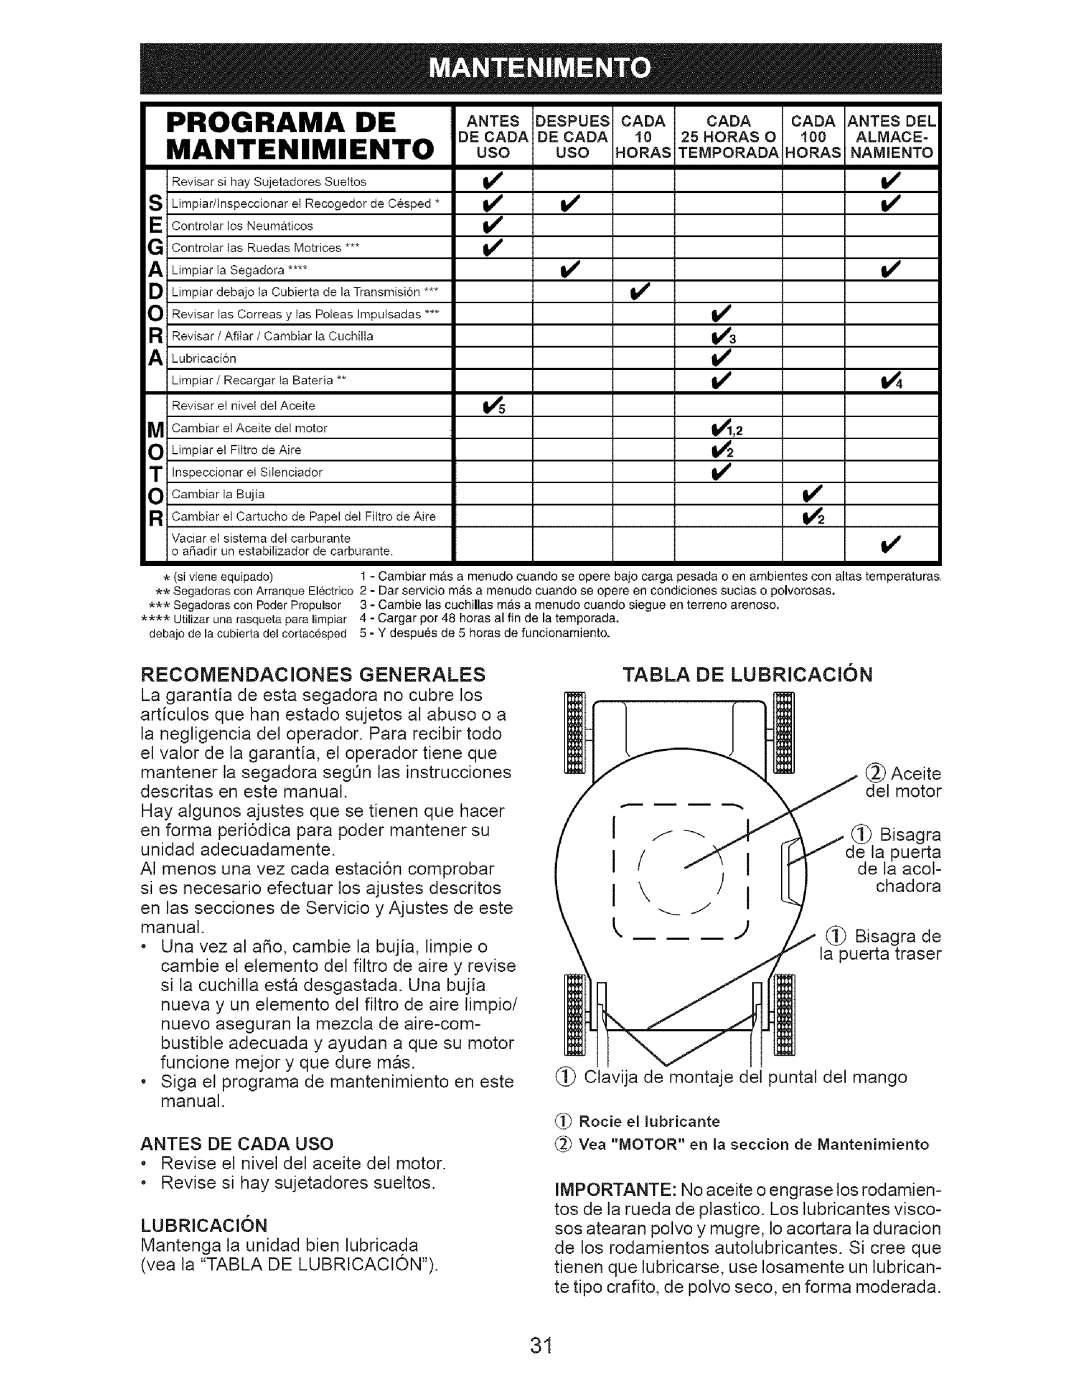 Craftsman 917.371812 owner manual Programa De, Mantenimiento, DECAOAOECAOAI0 2 .ORASO 100 ALMACE 